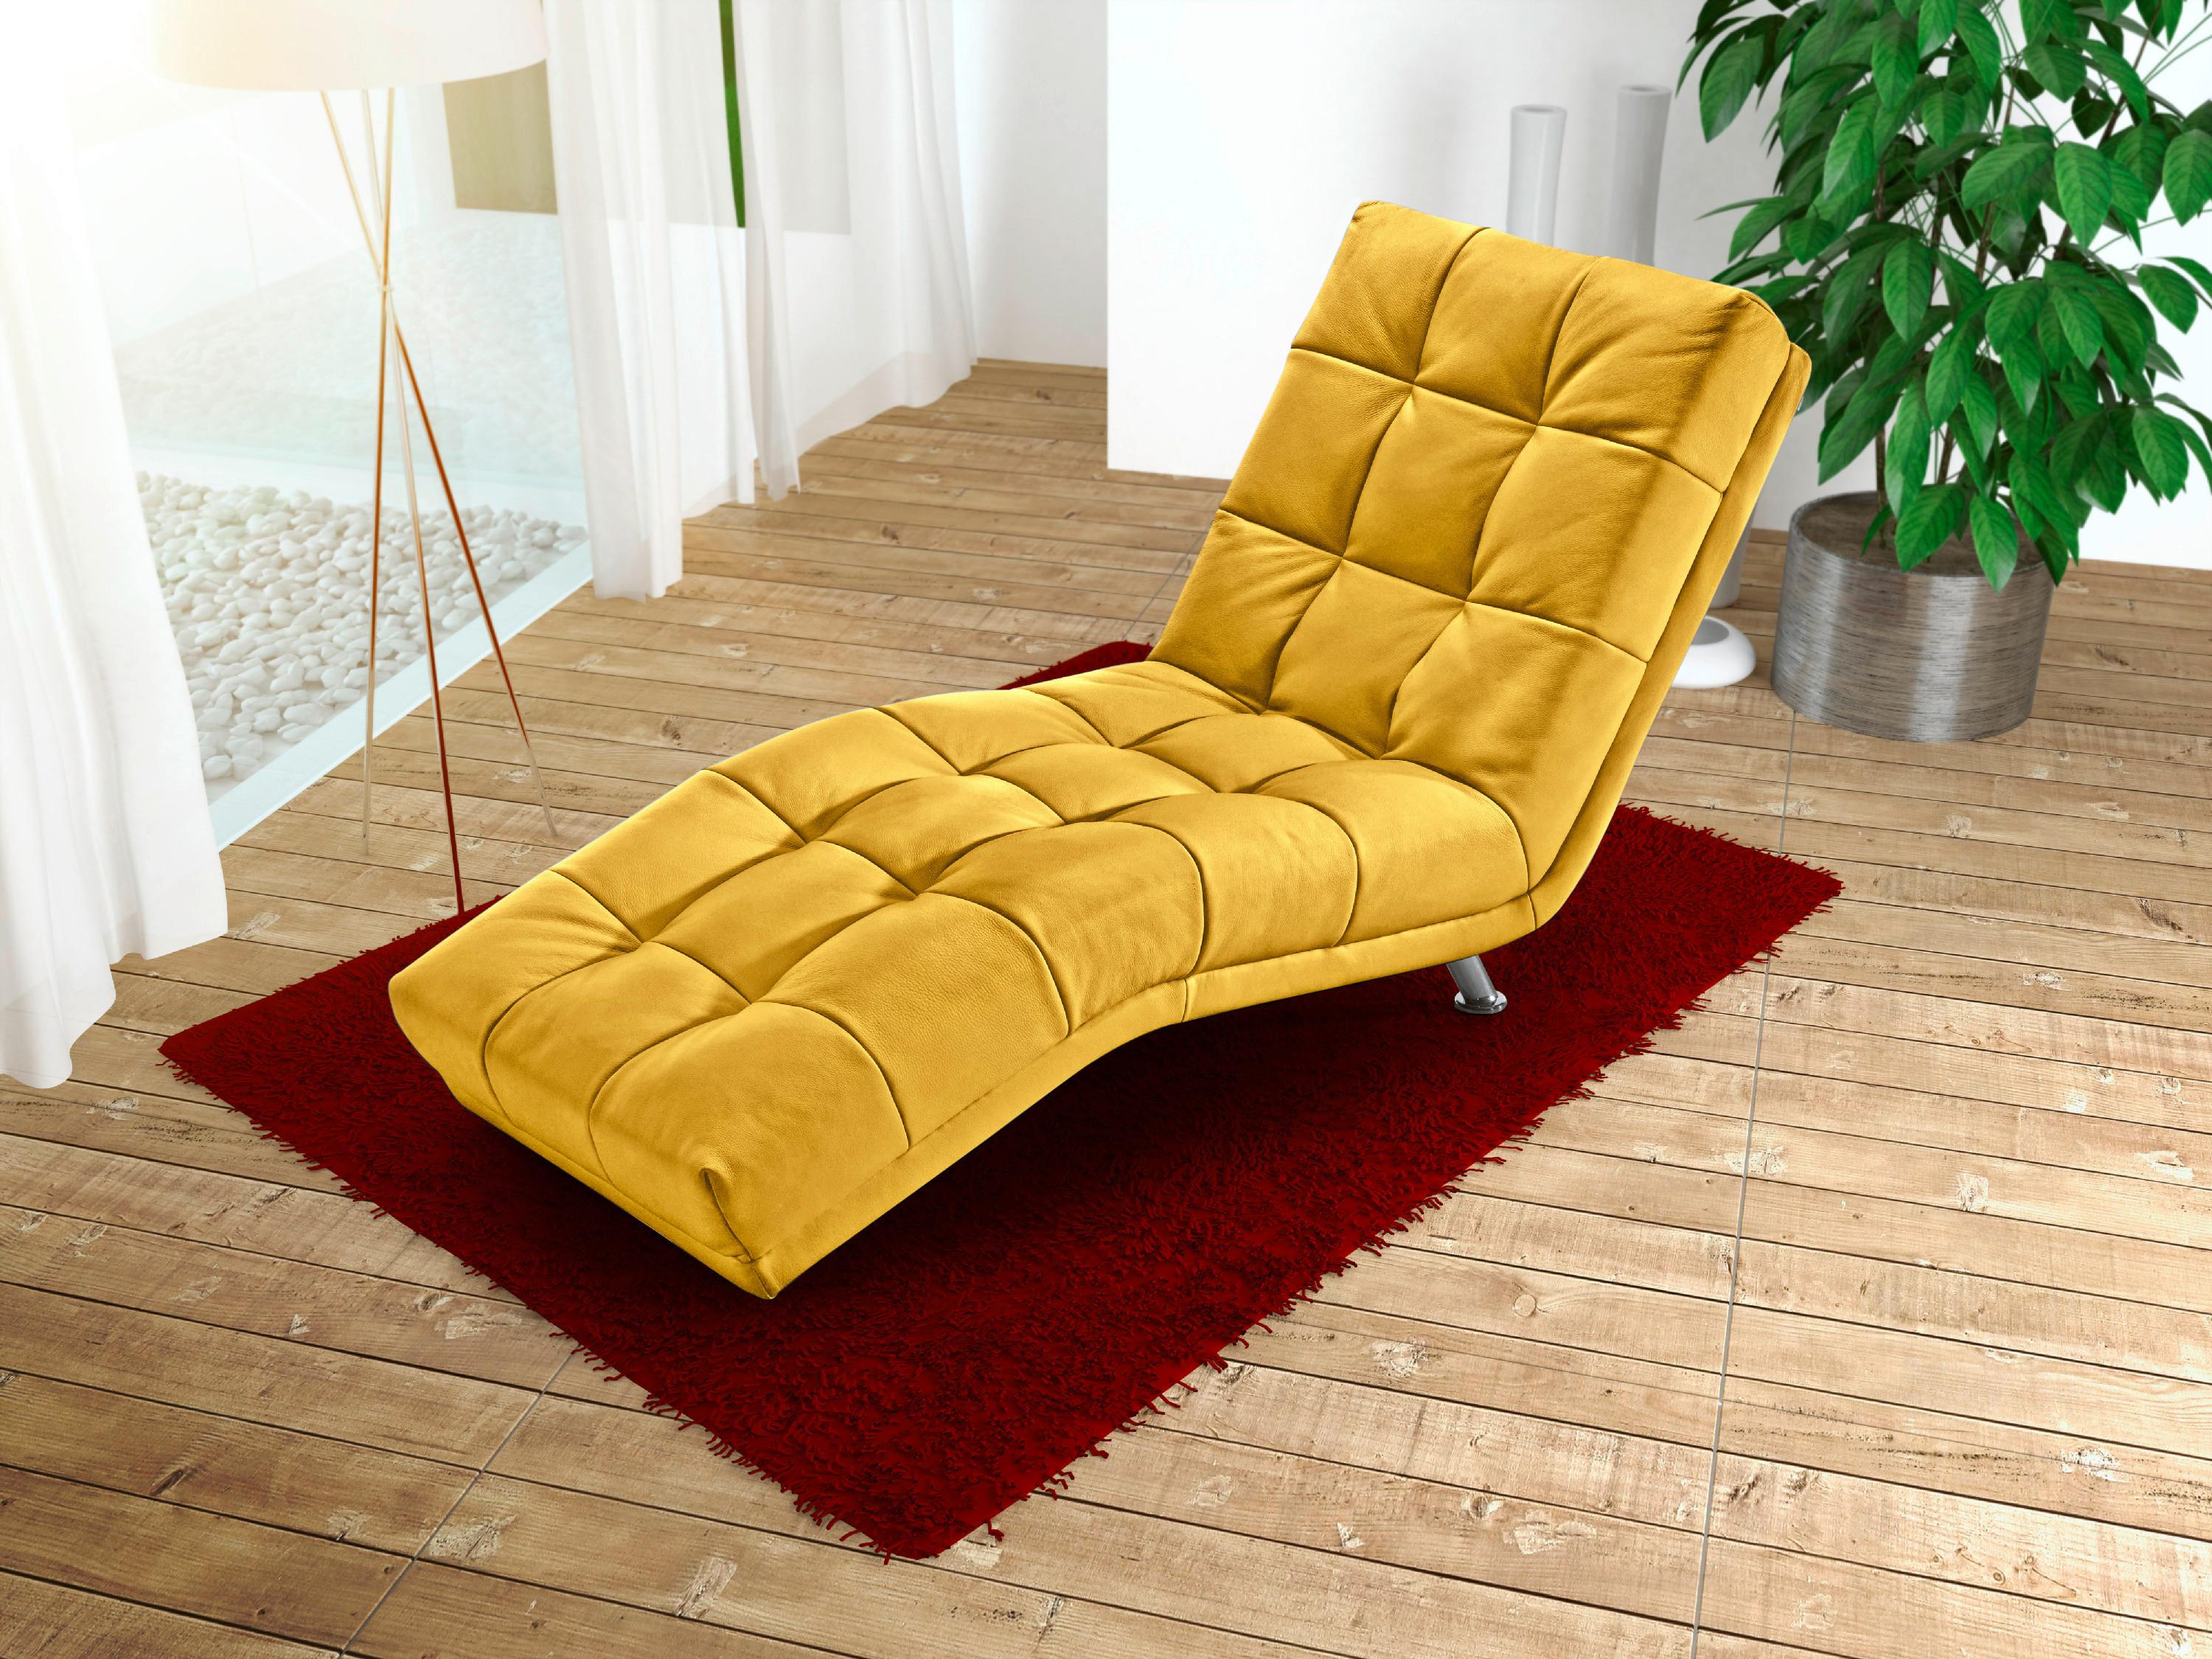 Relaxační Lehátko Isabella, Tmavě Žluté - tmavě žlutá/barvy chromu, Moderní, kov/textil (68/88/164cm)